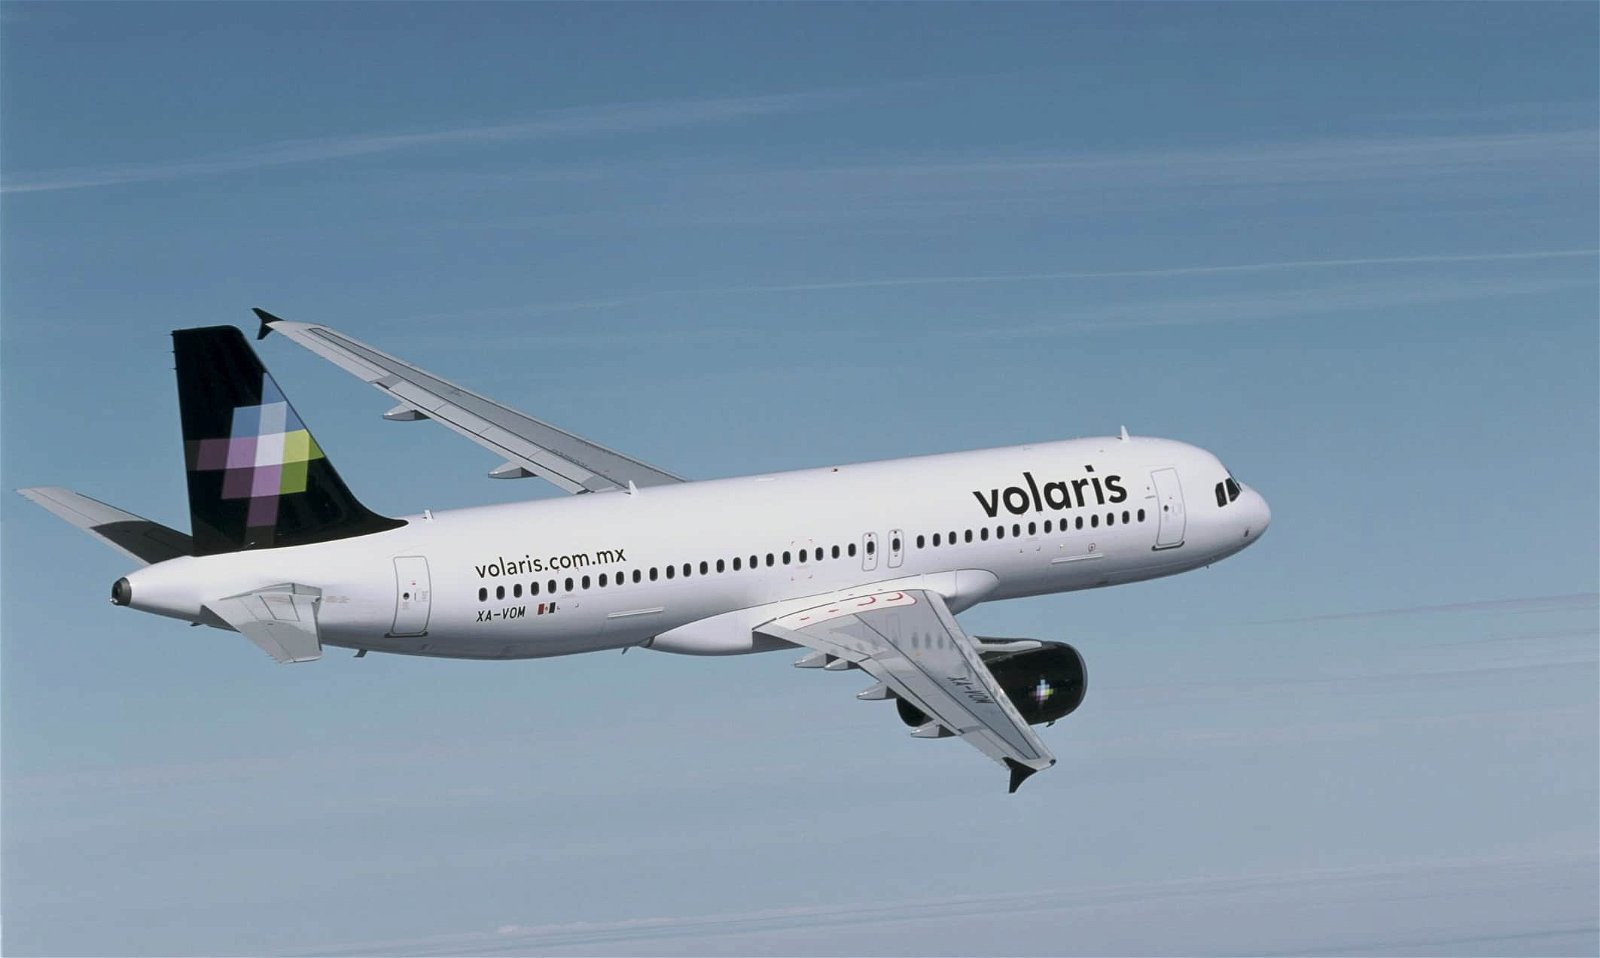 Een vliegtuig van low cost-maatschappij Volaris in volle vlucht.